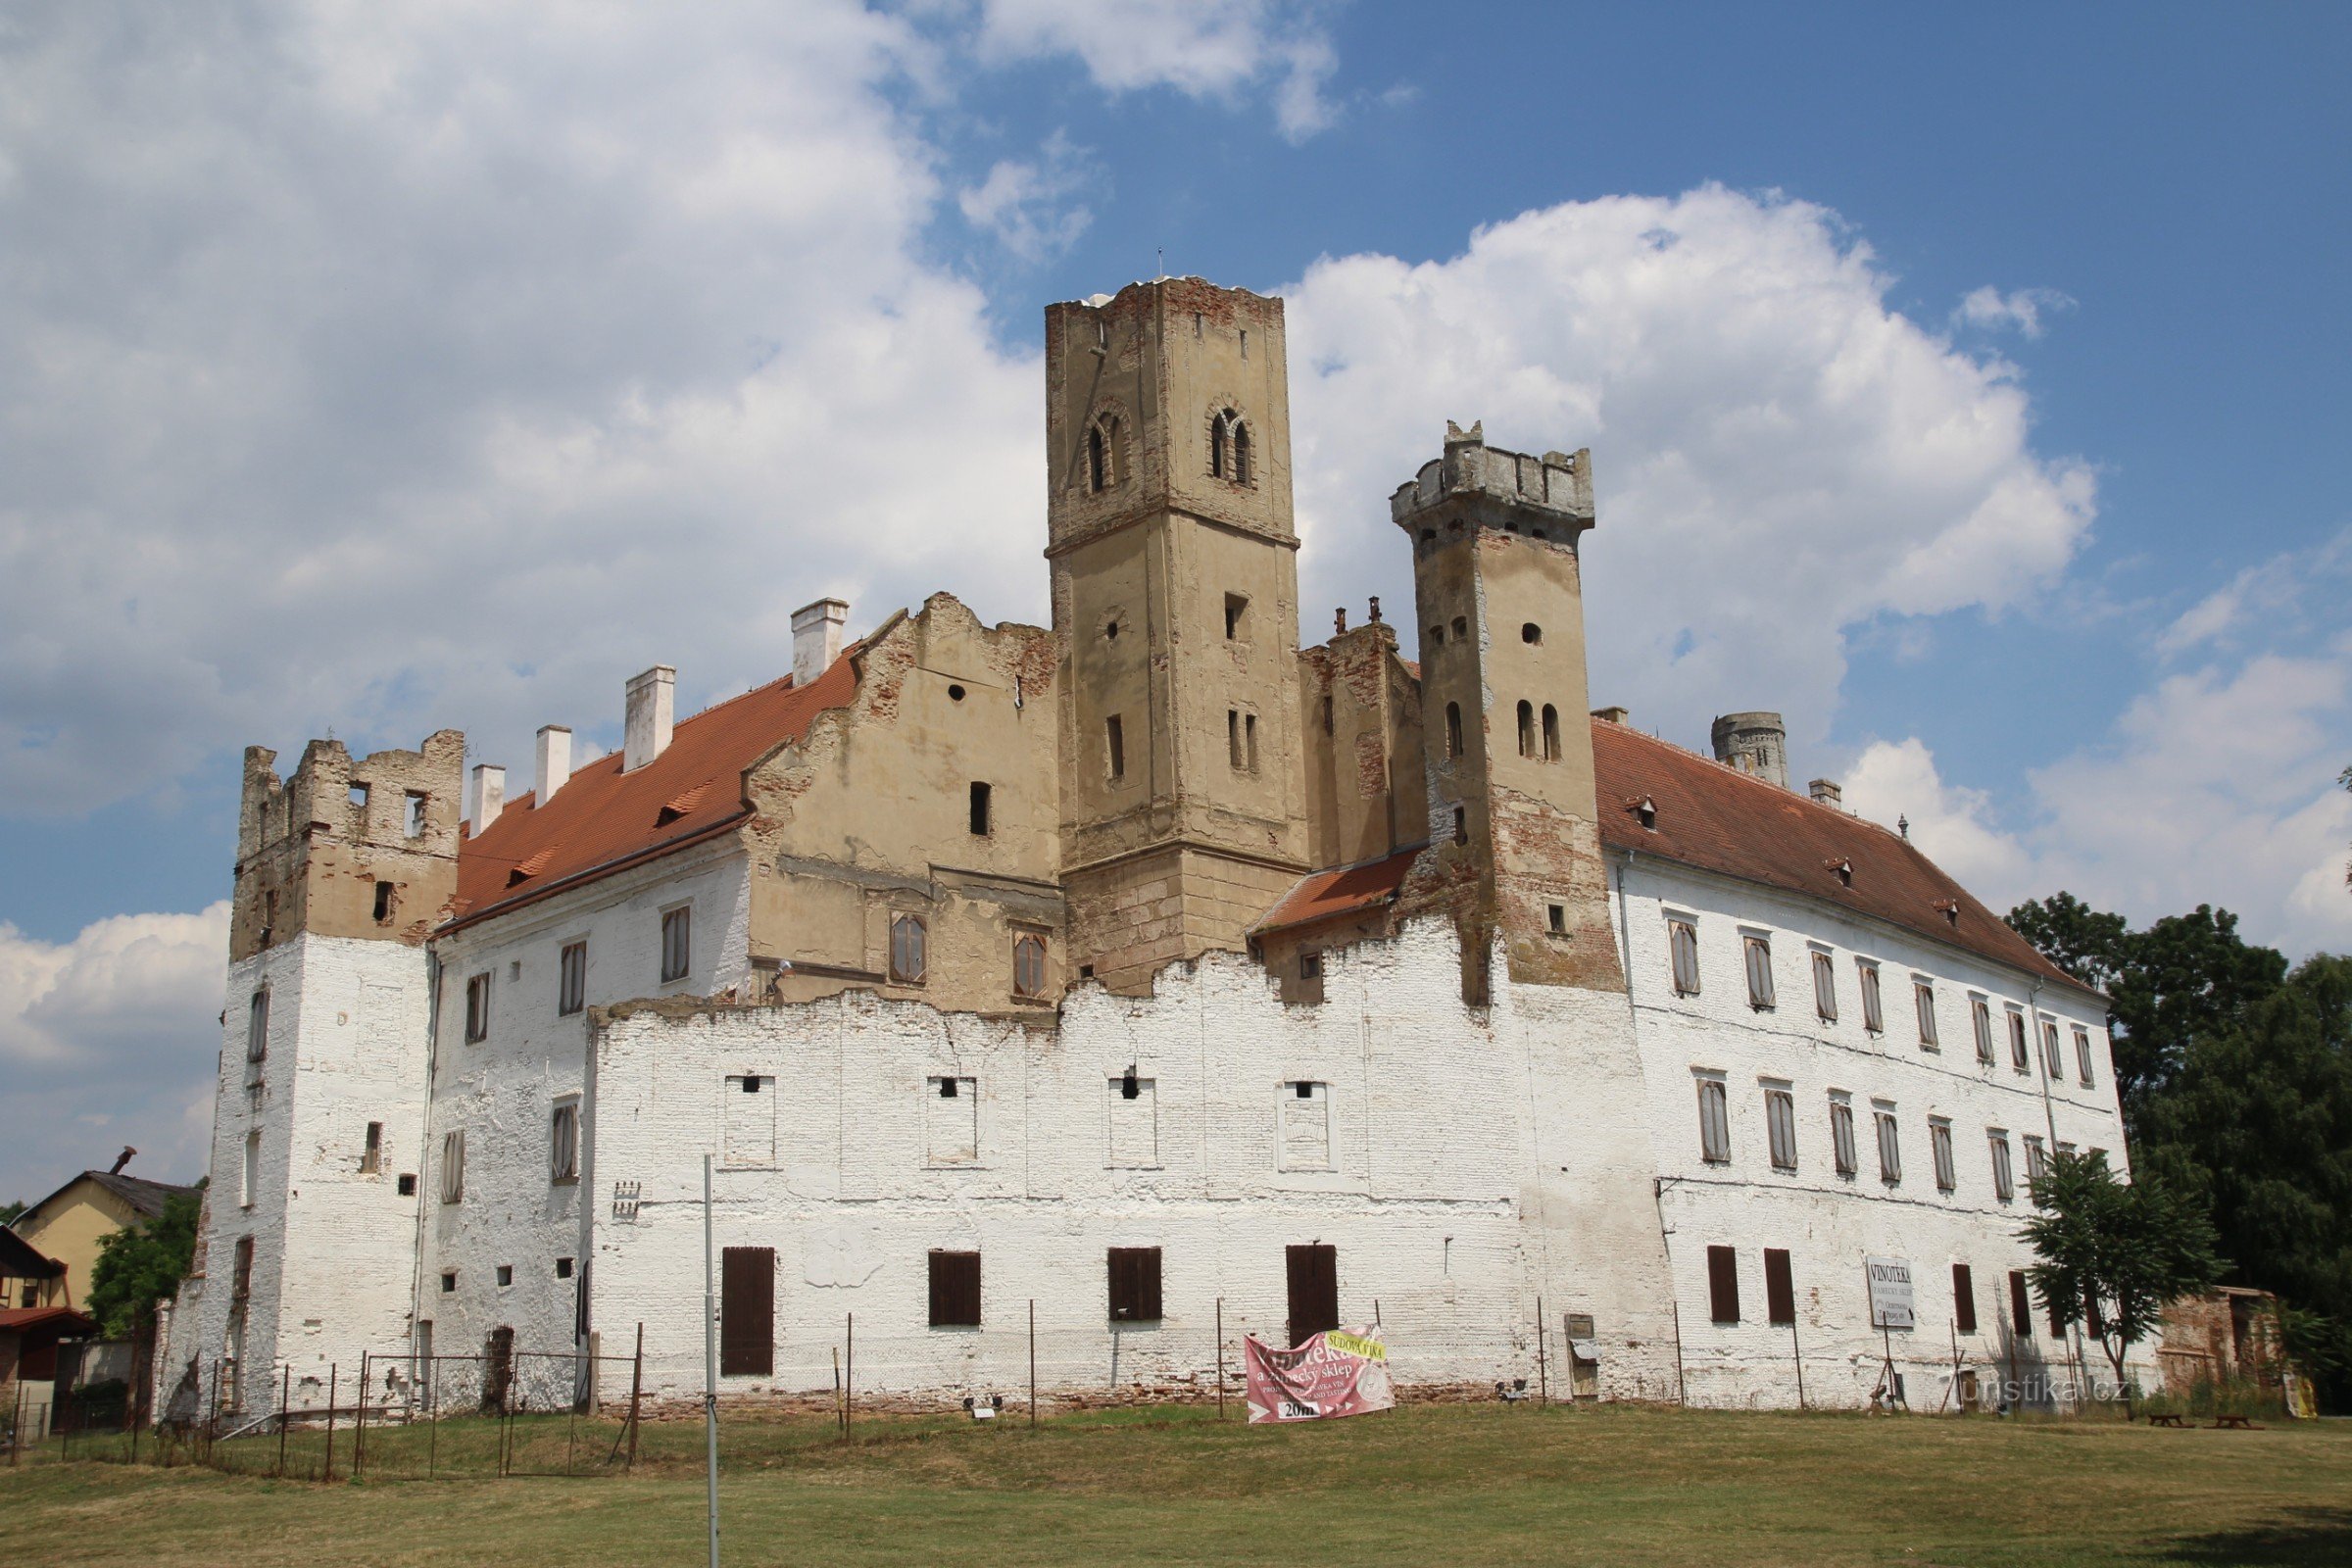 Άποψη του κάστρου Břeclav από το πάρκο με έναν κυρίαρχο πύργο παρατήρησης